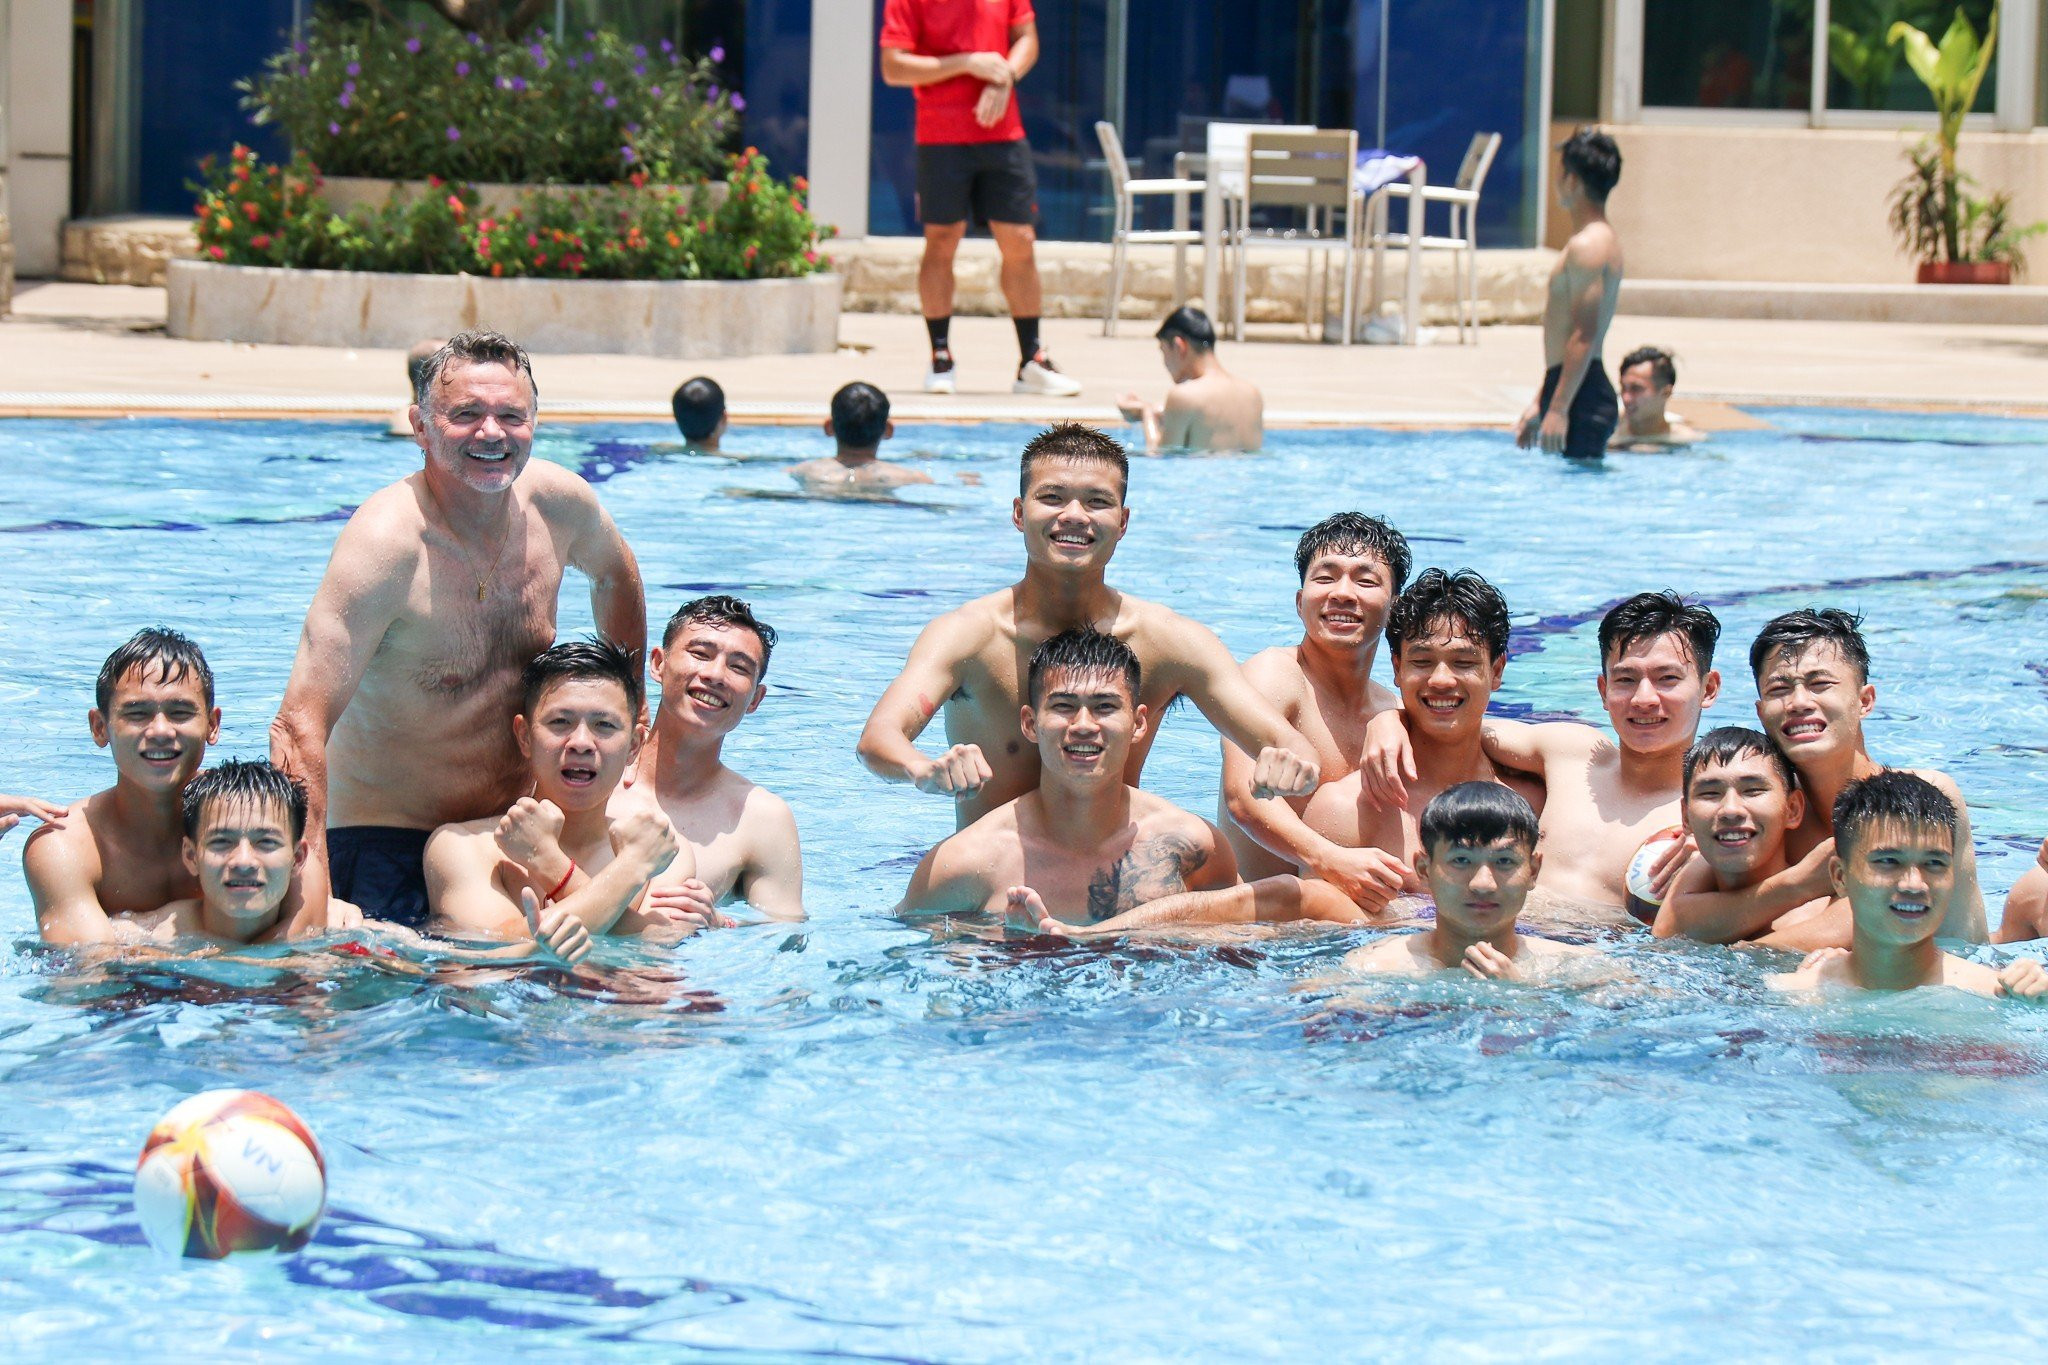 HLV Troussier cùng U22 Việt Nam thư giãn ở bể bơi - Bóng Đá